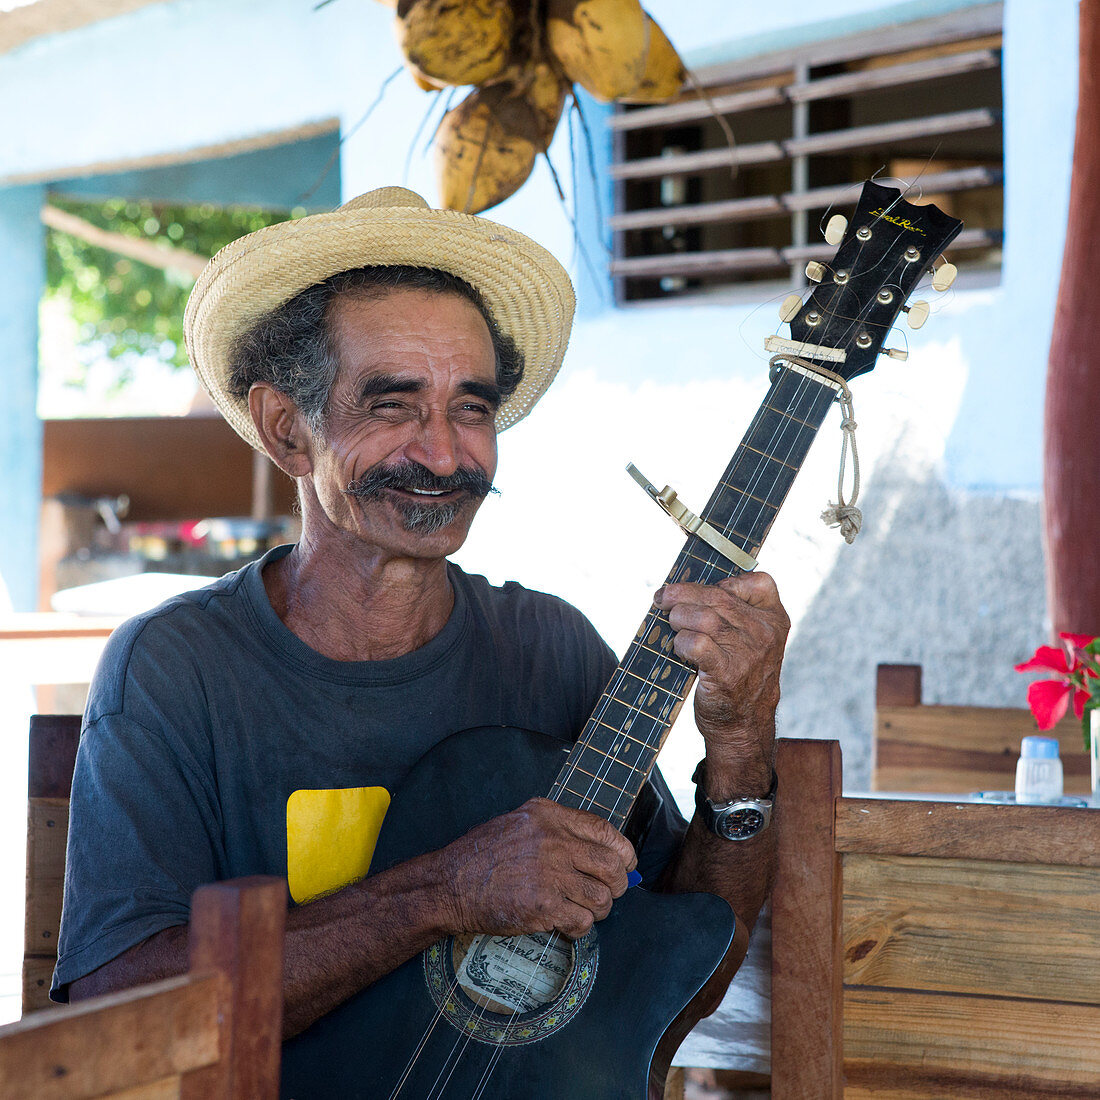 Cuban man with guitar in a retaurant in Trinidad